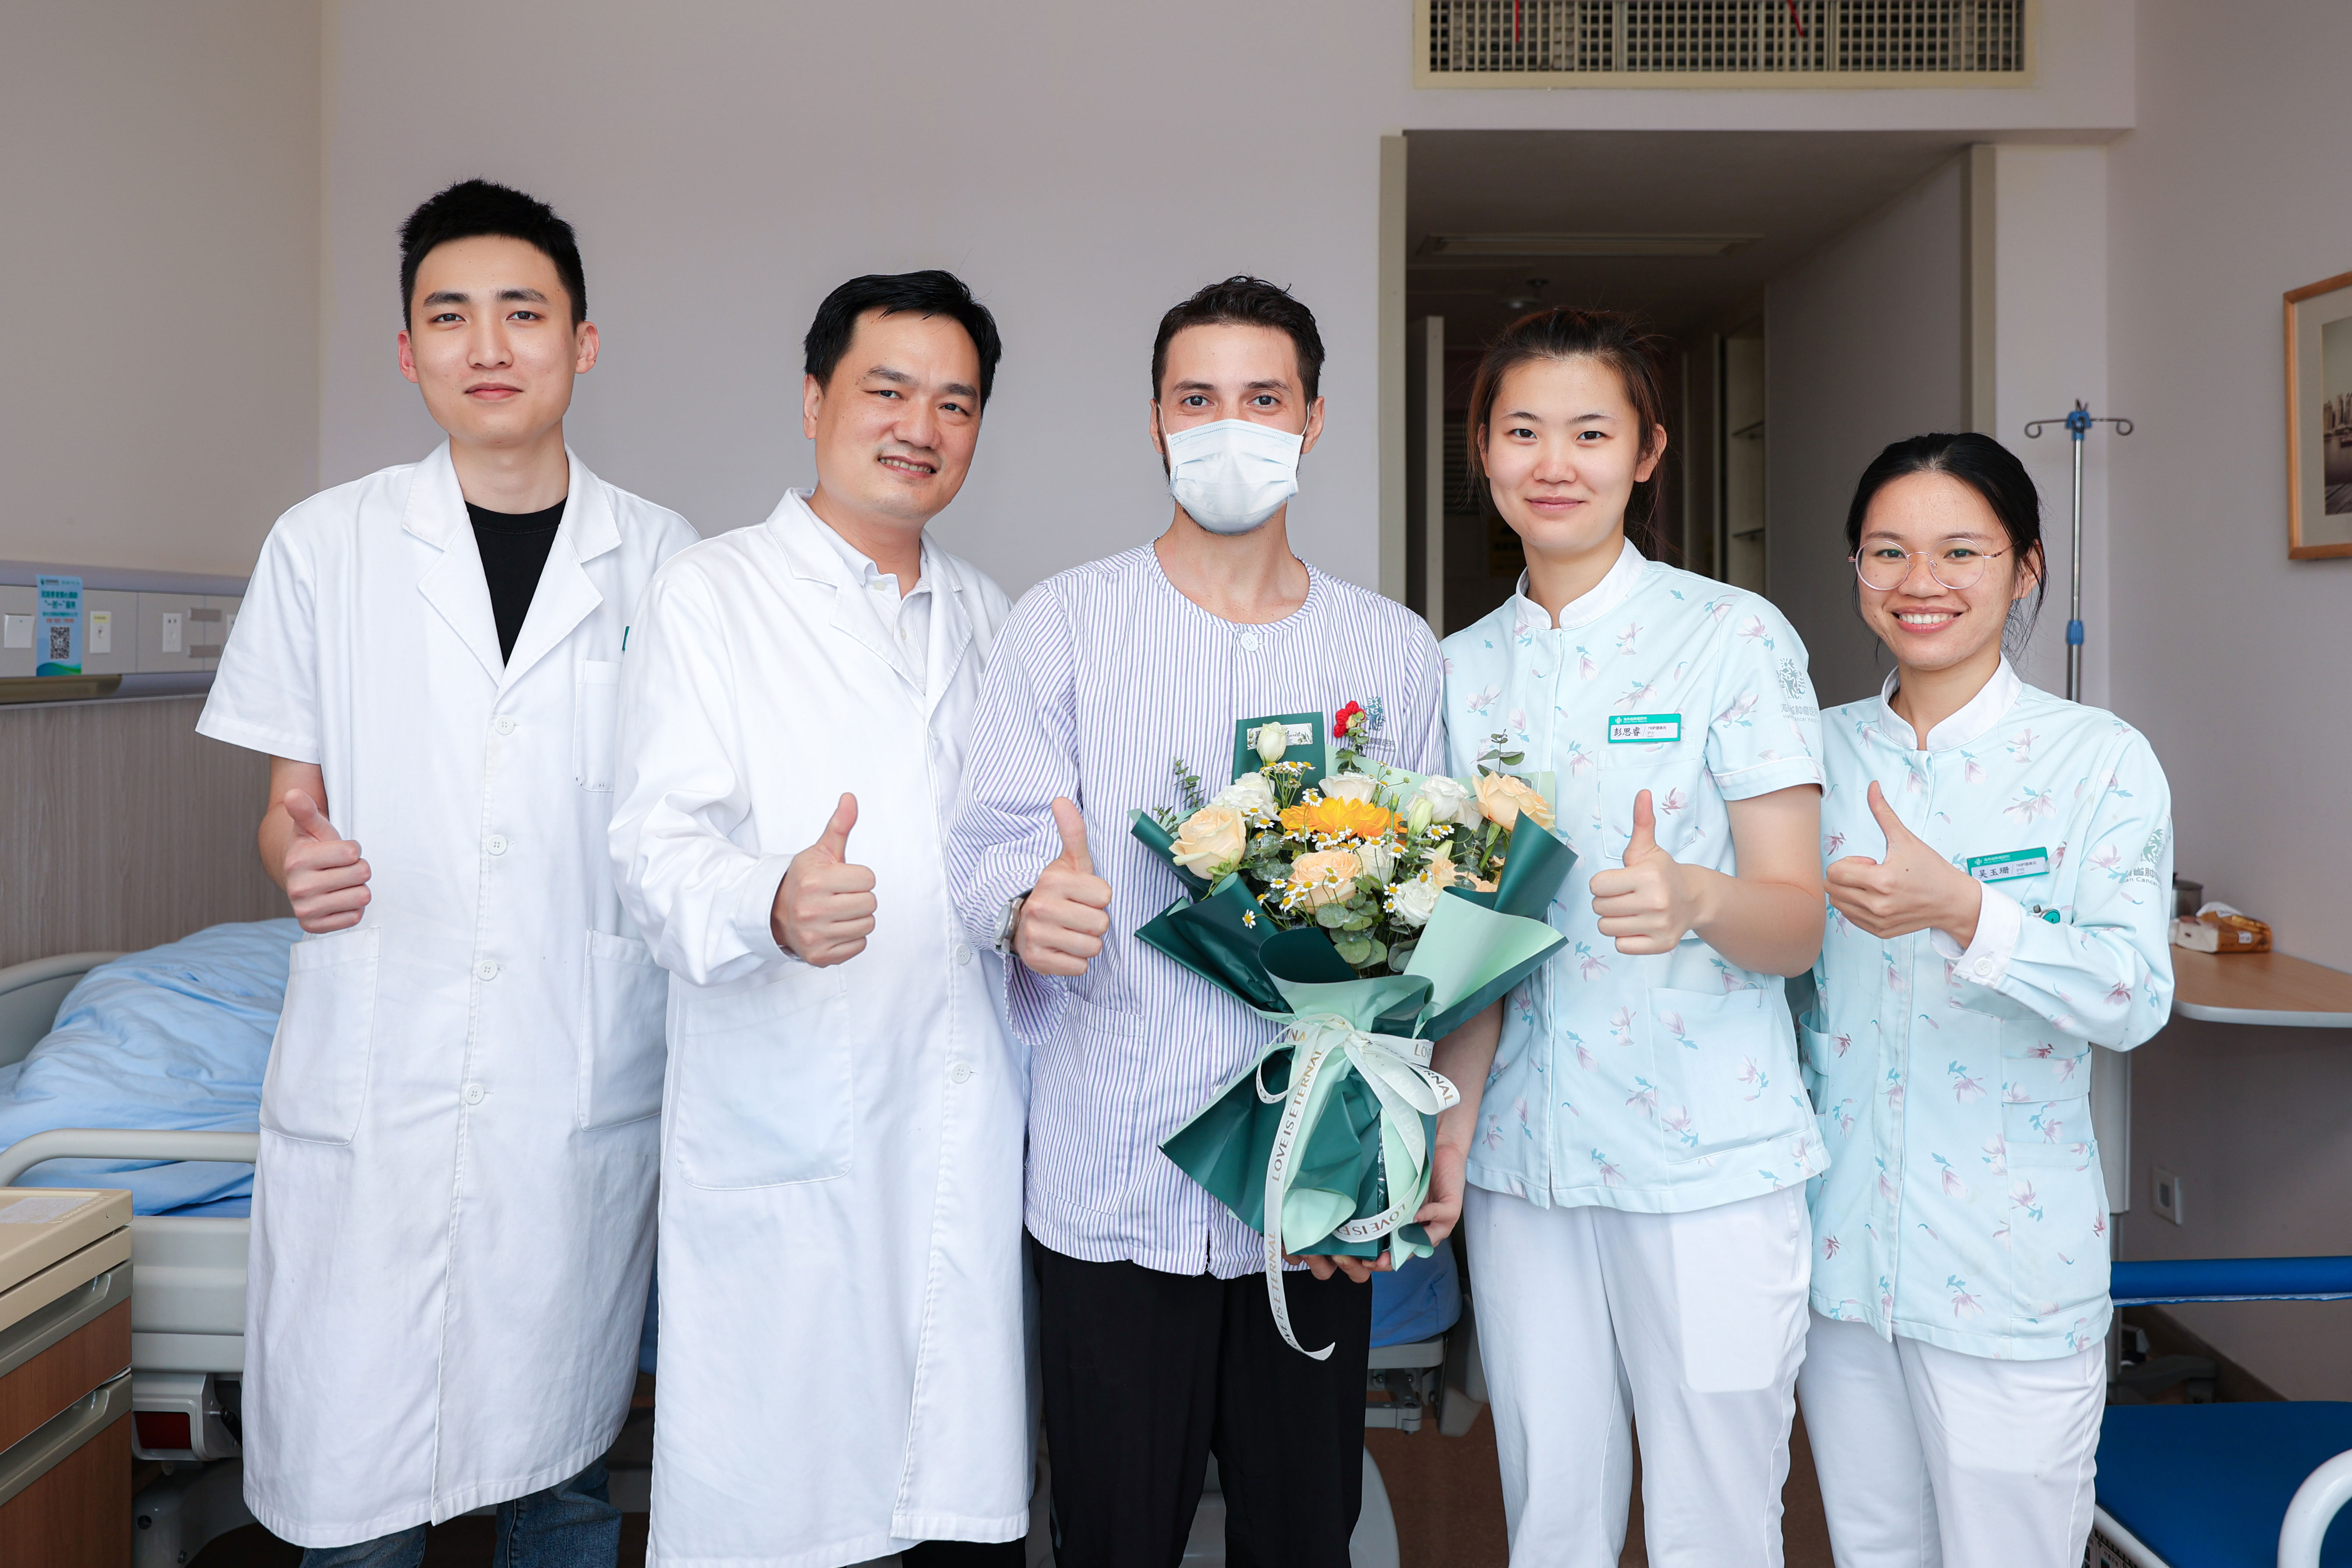 海南省肿瘤医院接轨国际诊疗服务  获国外患者「点赞」